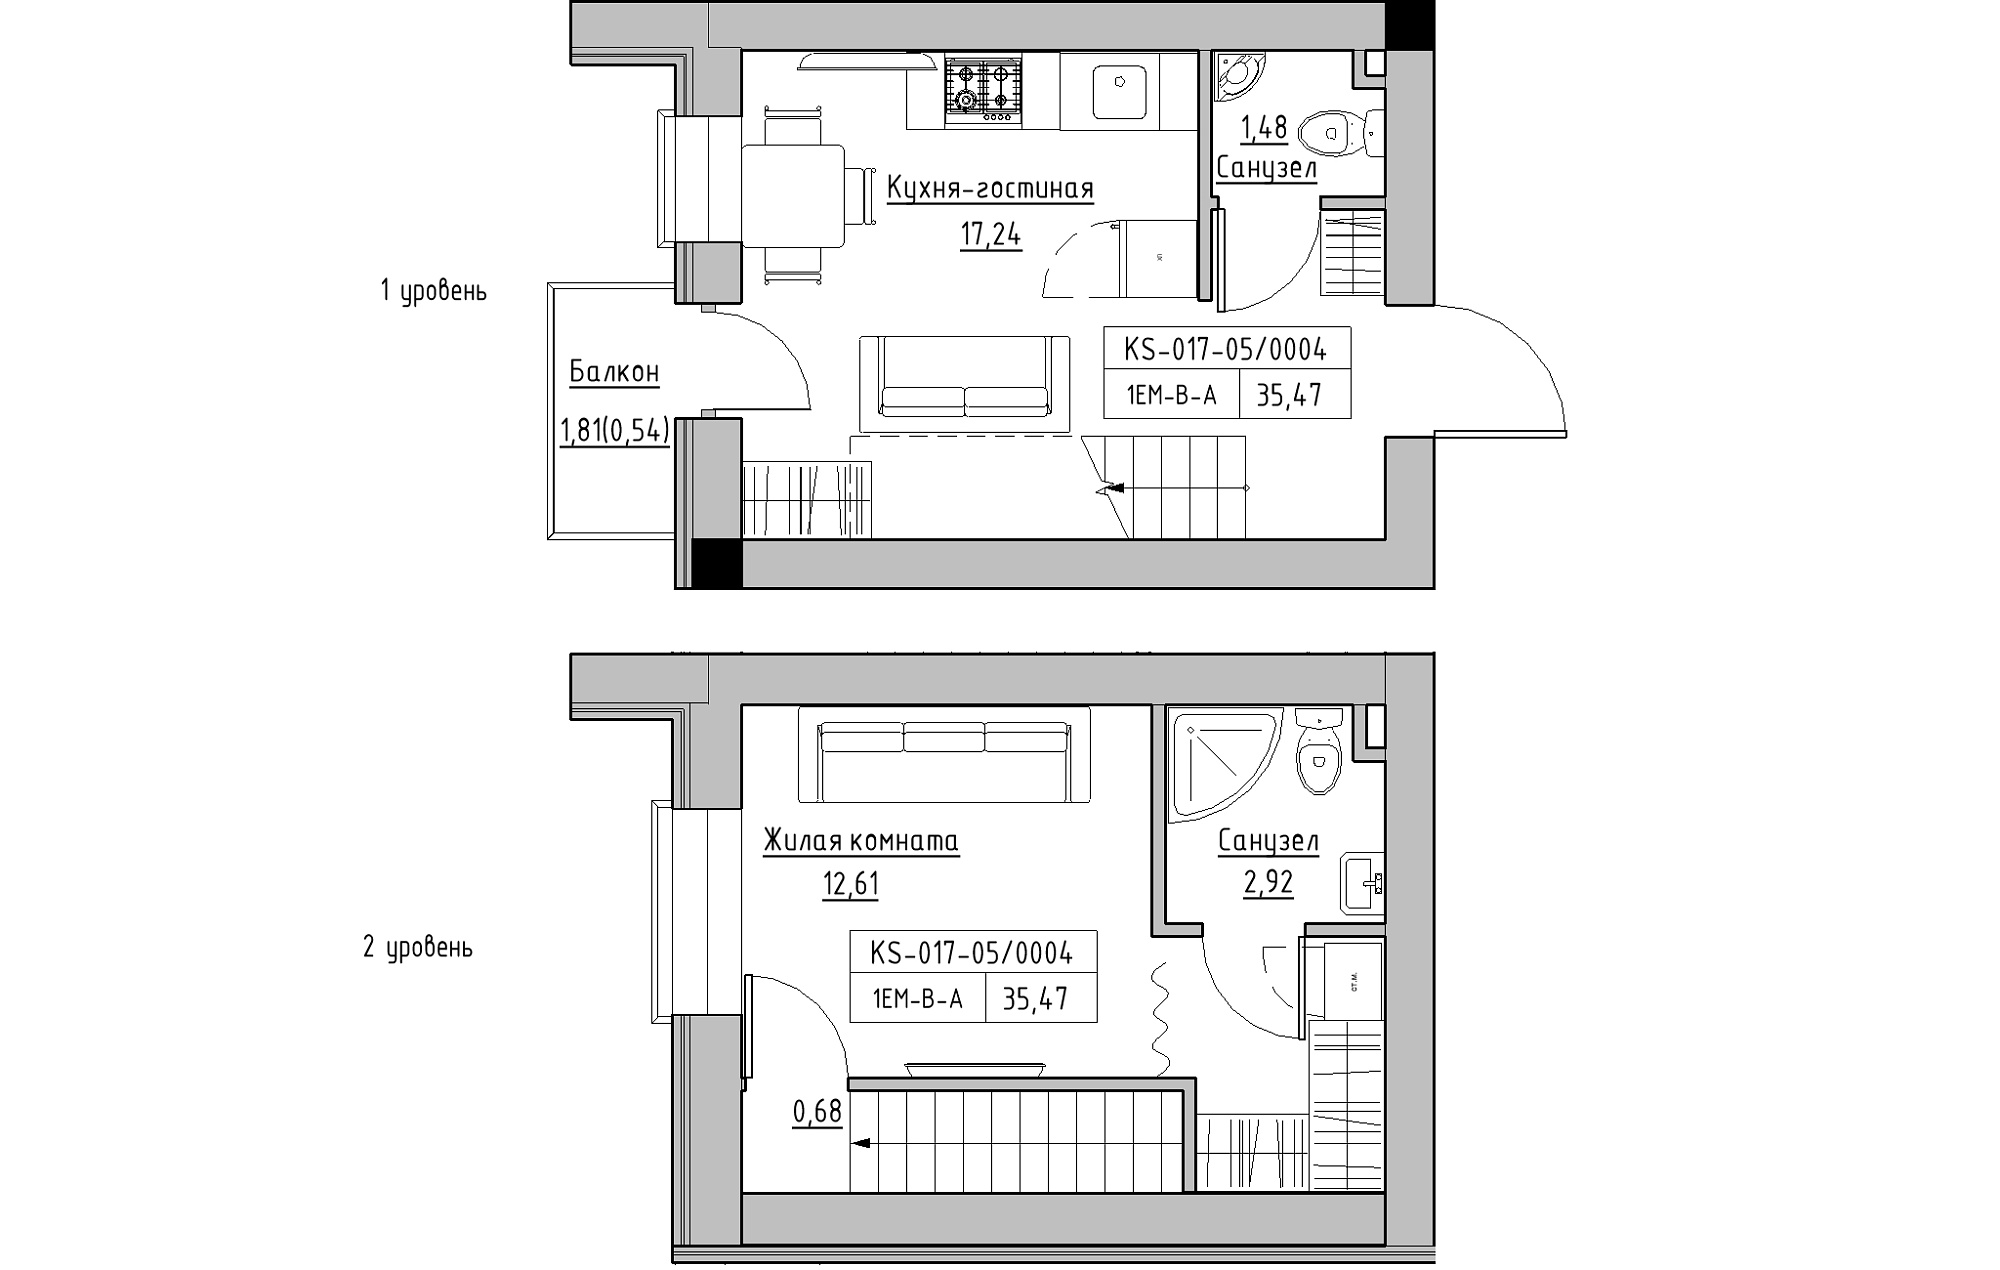 Planning 2-lvl flats area 35.41m2, KS-017-05/0004.